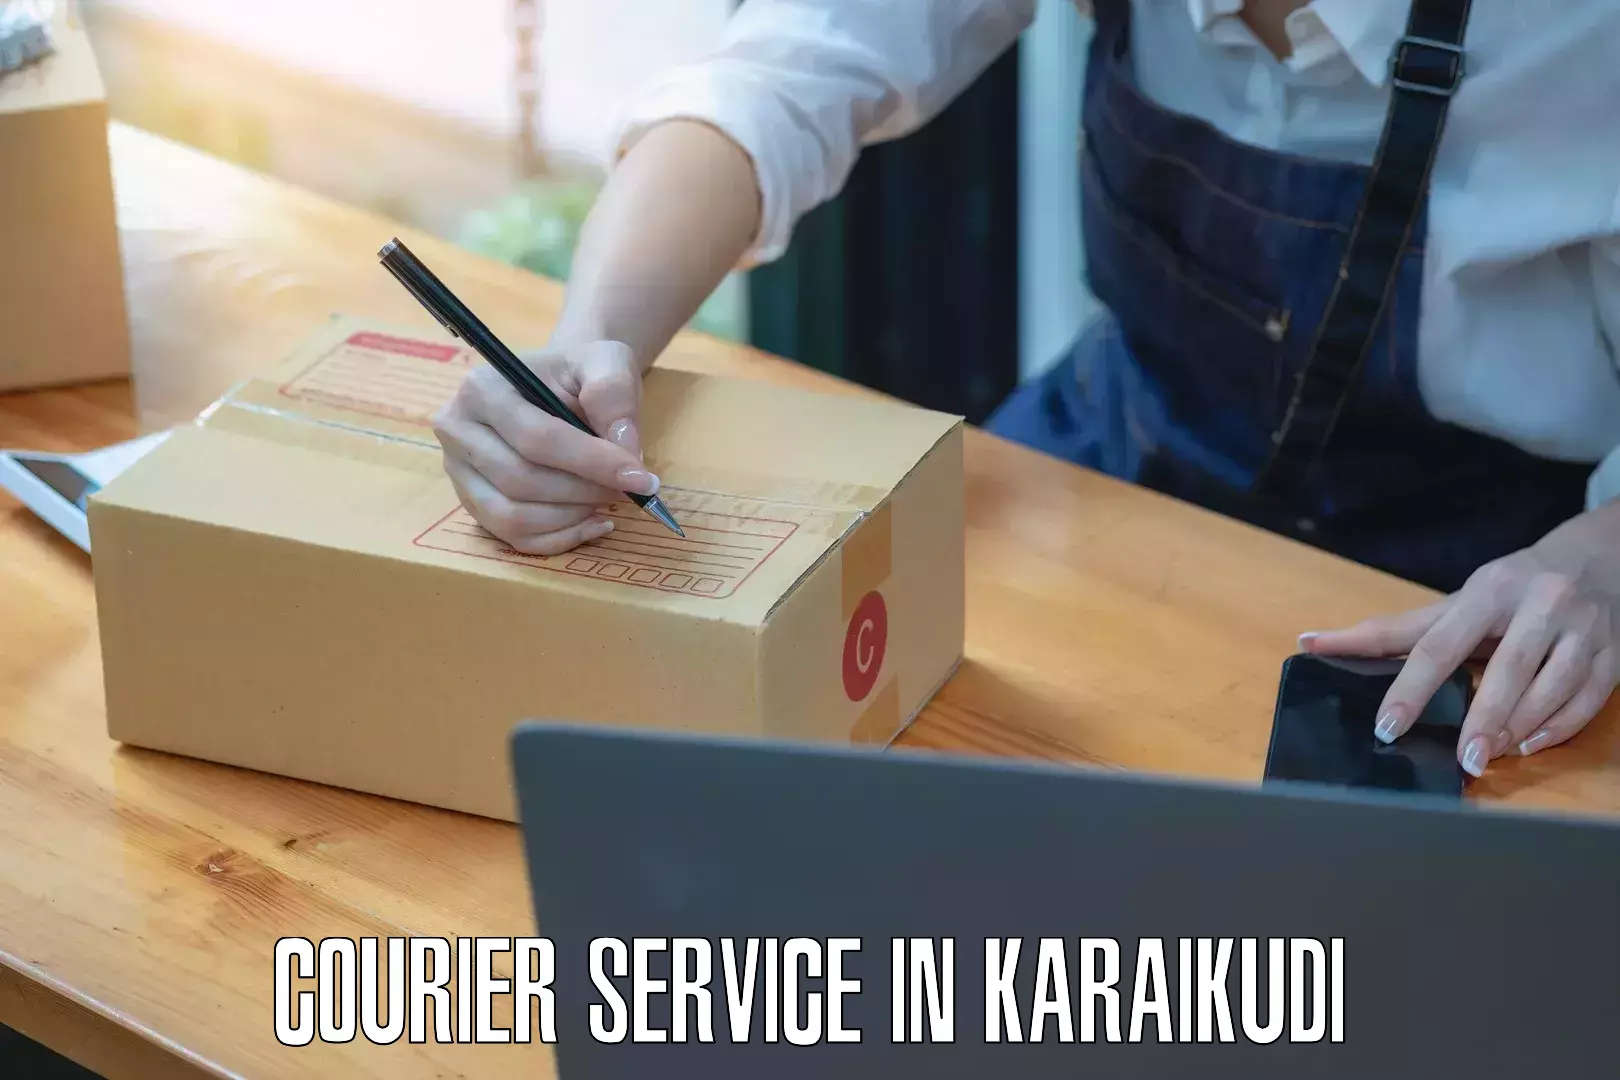 Cargo delivery service in Karaikudi